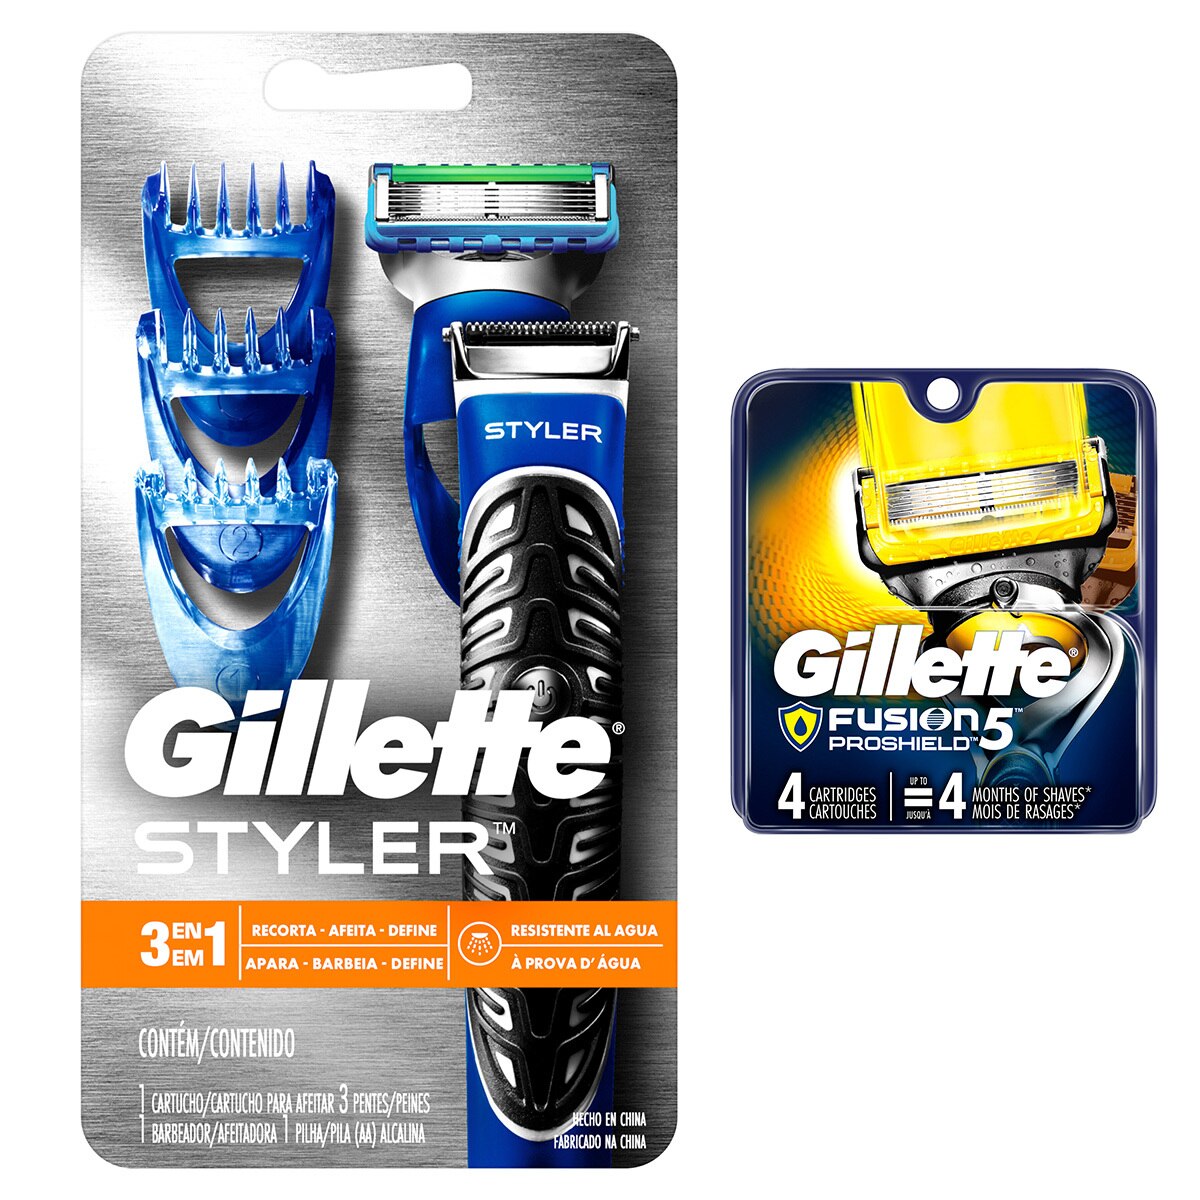 Gillette Styler Maquina Afeitadora con 4 Cartuchos 